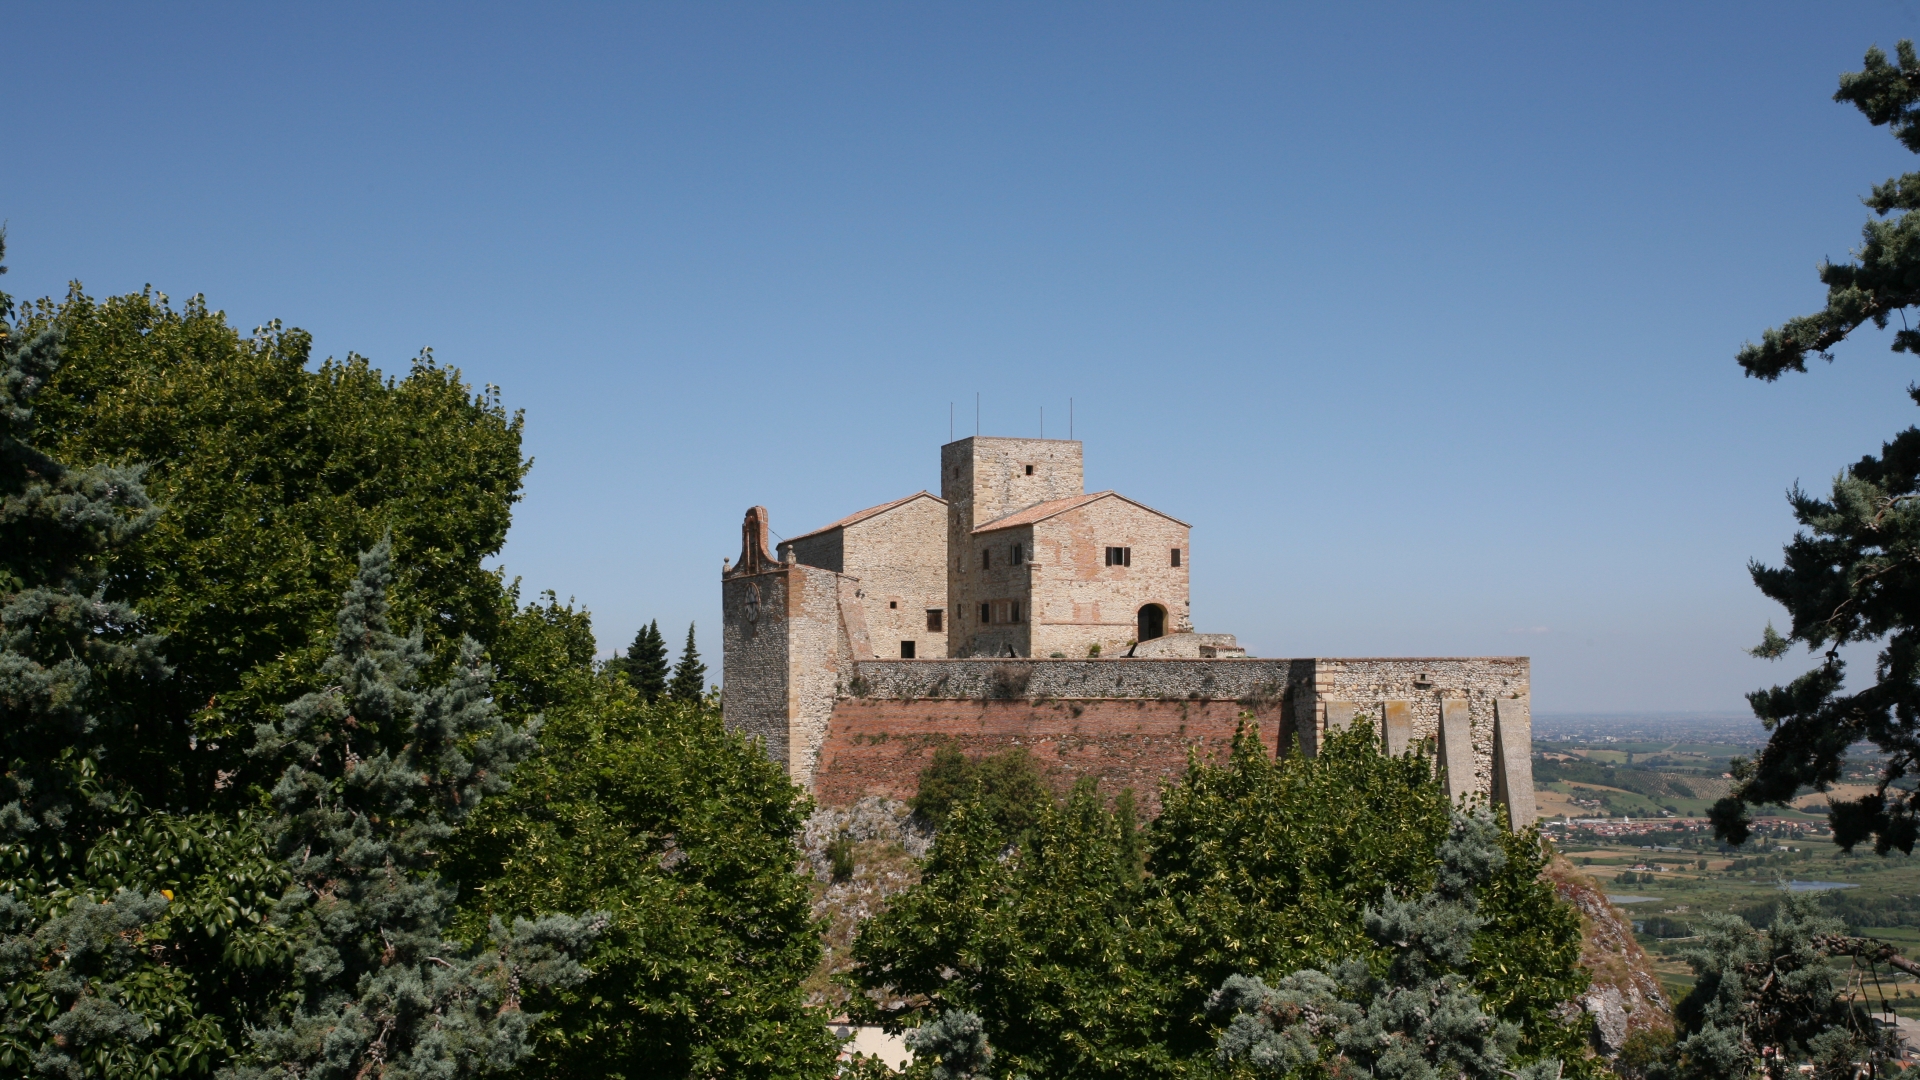 Verucchio | Rocca Malatestiana photo by Paritani